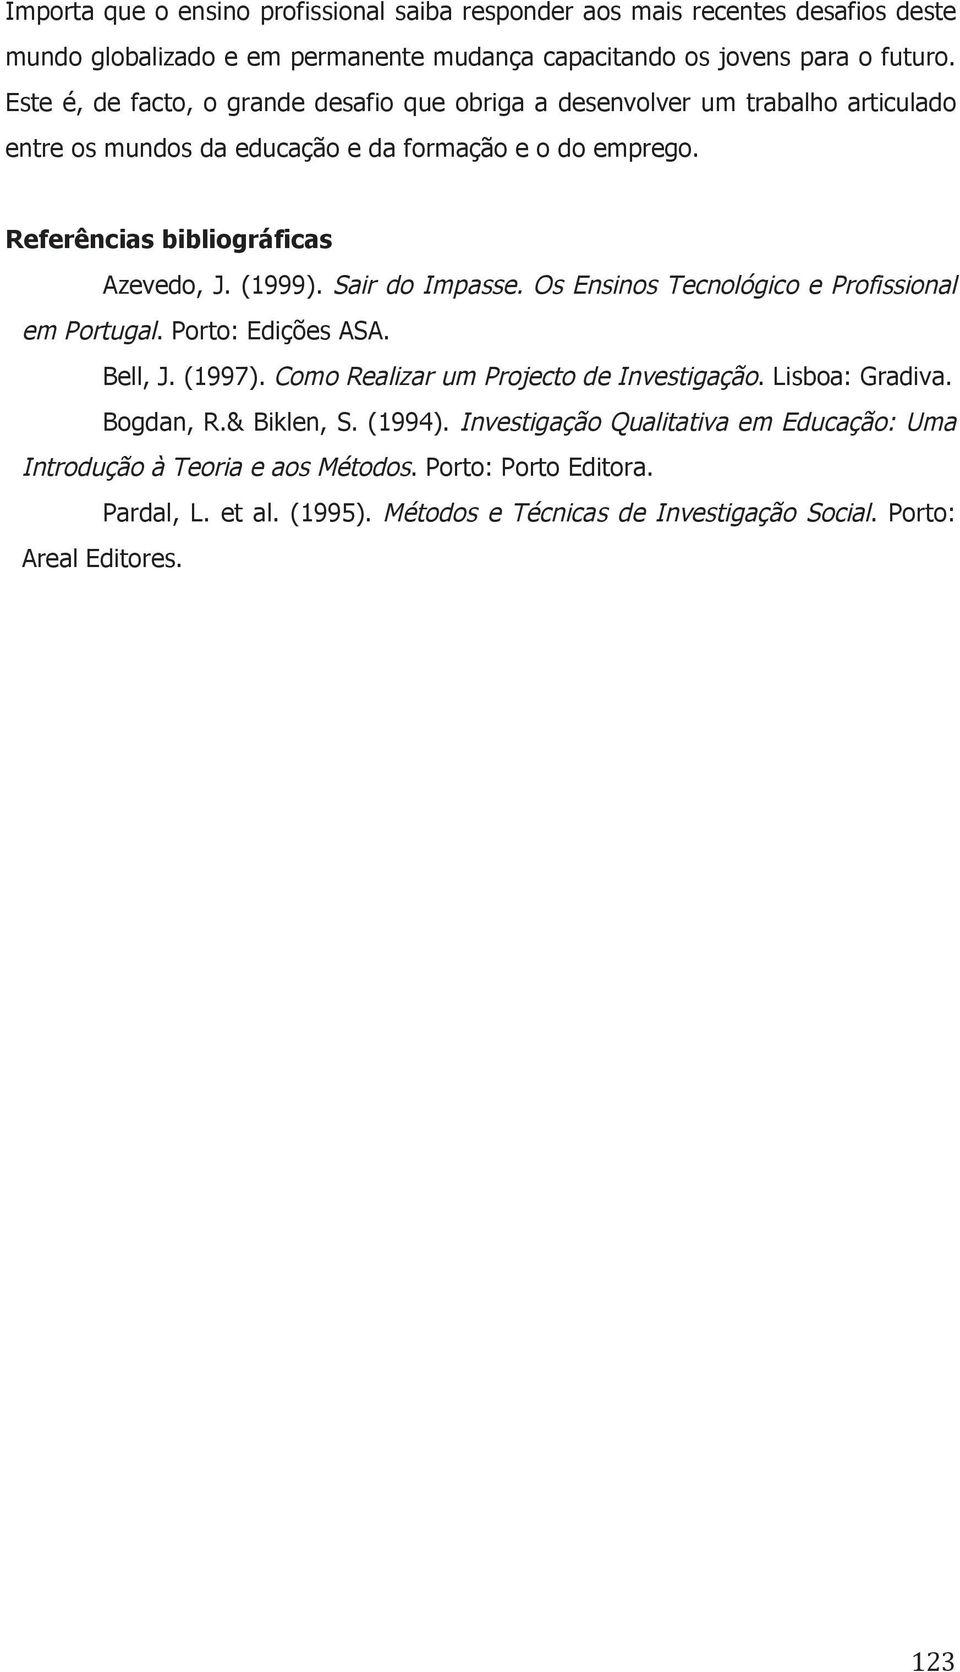 (1999). Sair do Impasse. Os Ensinos Tecnológico e Profissional em Portugal. Porto: Edições ASA. Bell, J. (1997). Como Realizar um Projecto de Investigação. Lisboa: Gradiva. Bogdan, R.